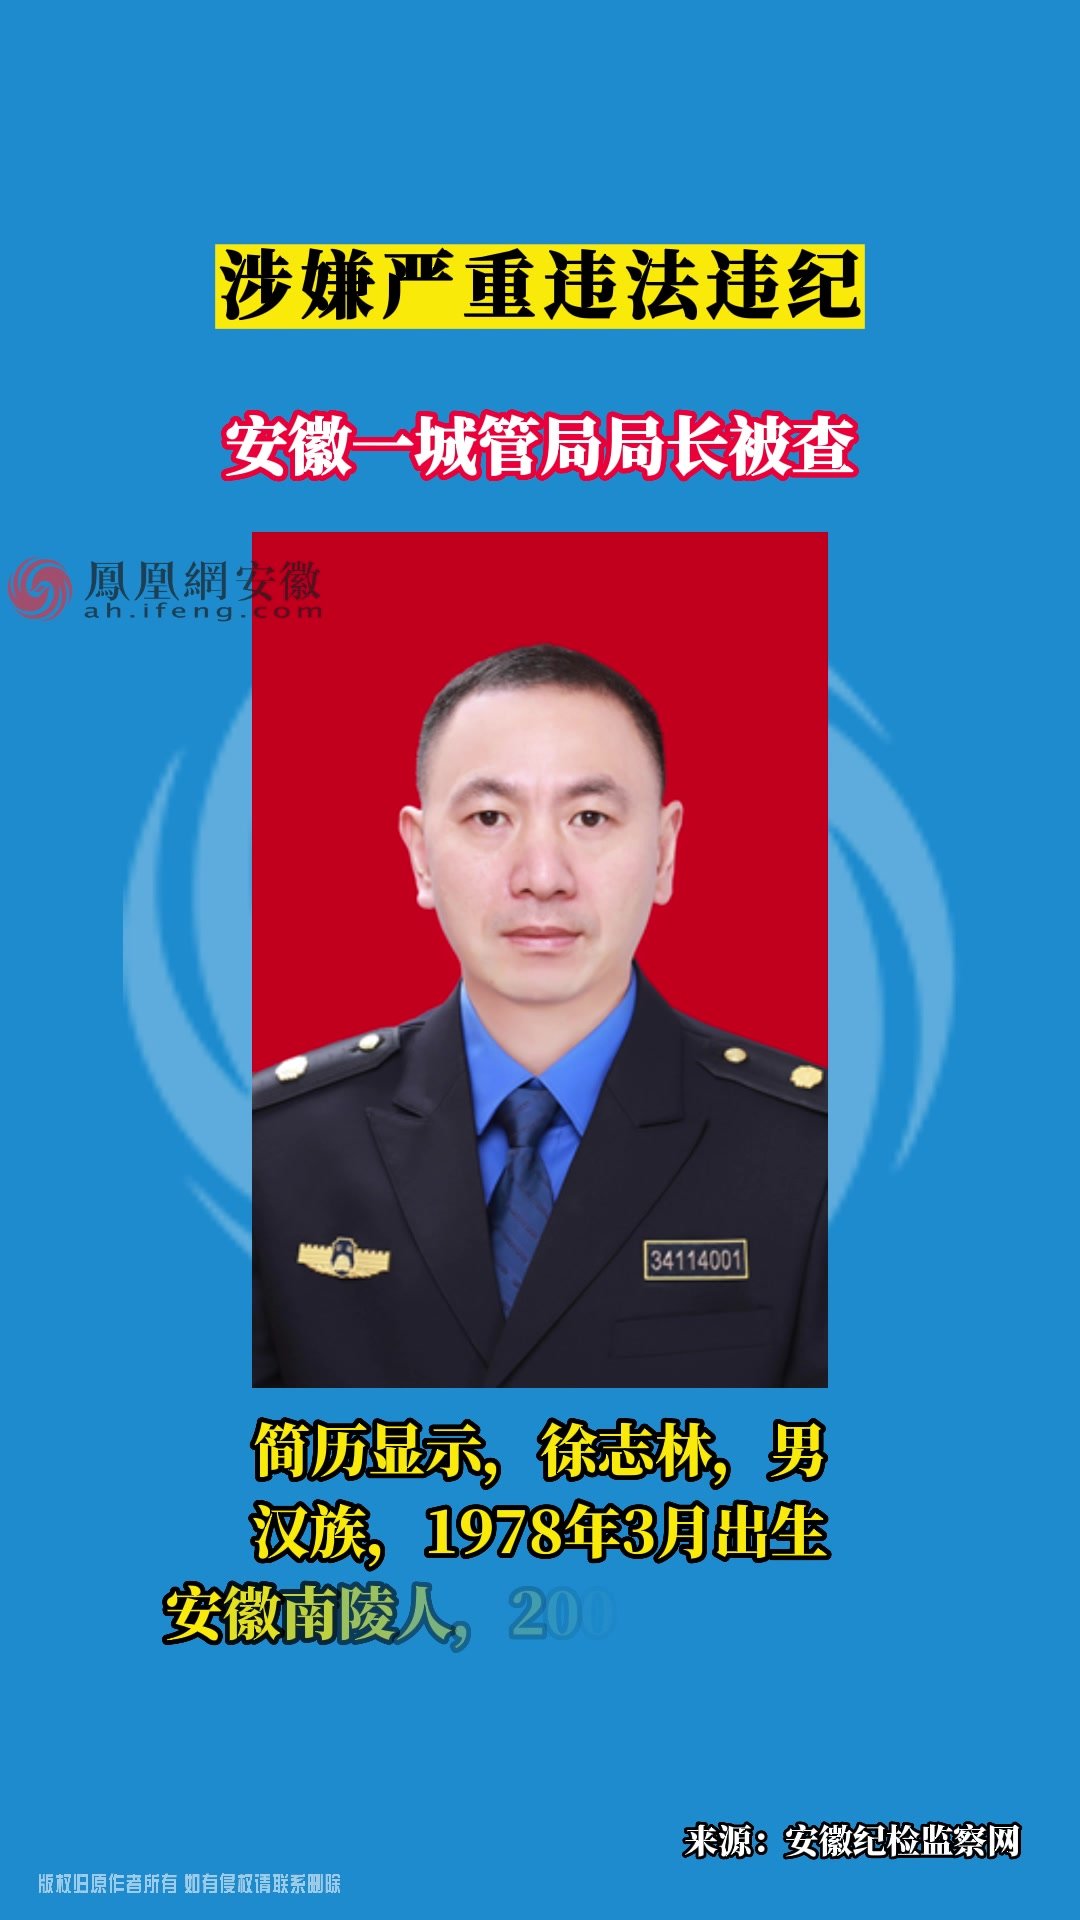 中国太平副总经理肖星因涉嫌严重违纪违法被调查 - RTHK